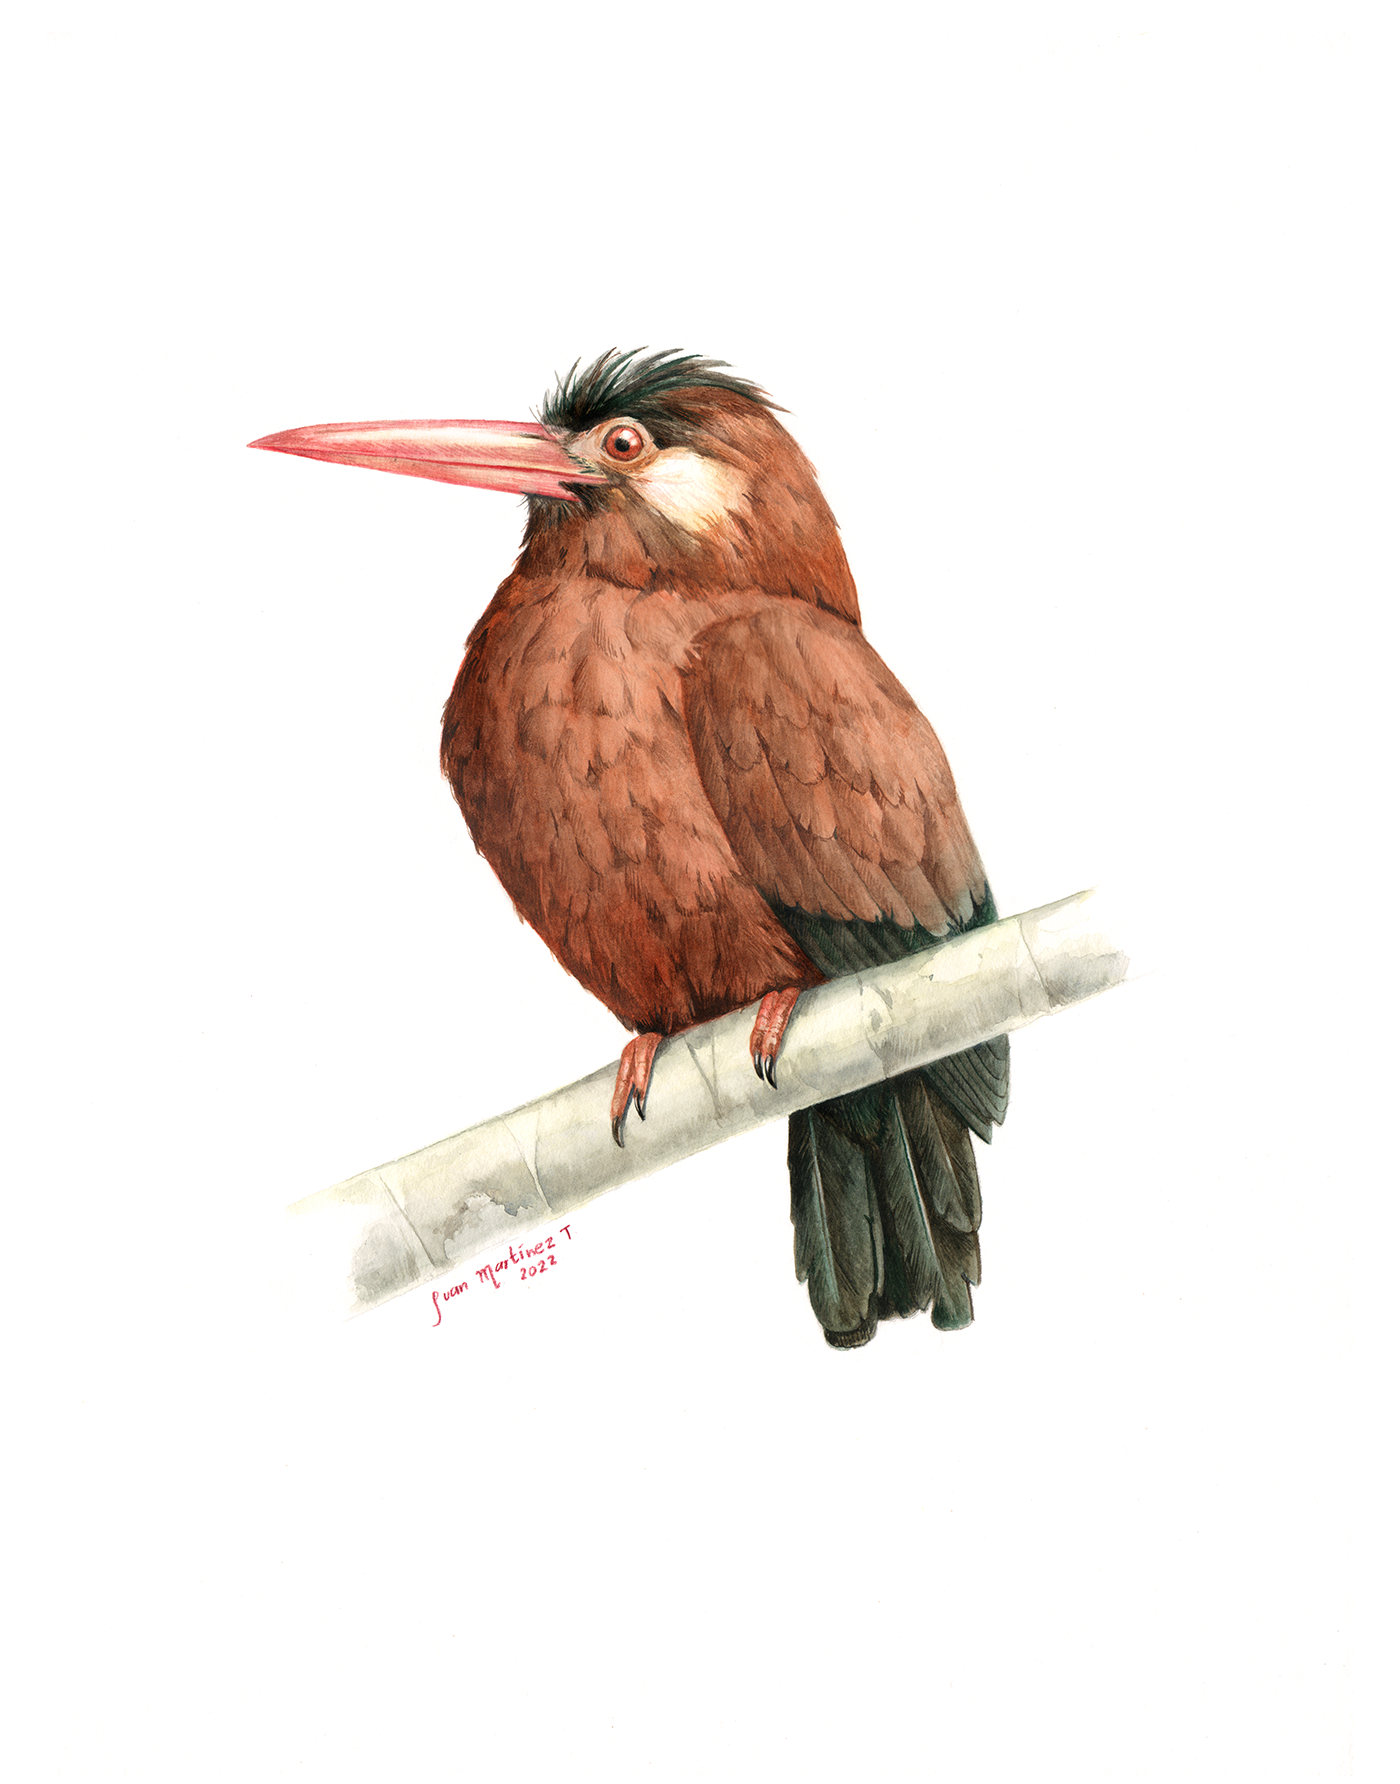 aves birds animals Nature scientific illustration Amazon ilustración científica watercolor acuarela ILLUSTRATION 